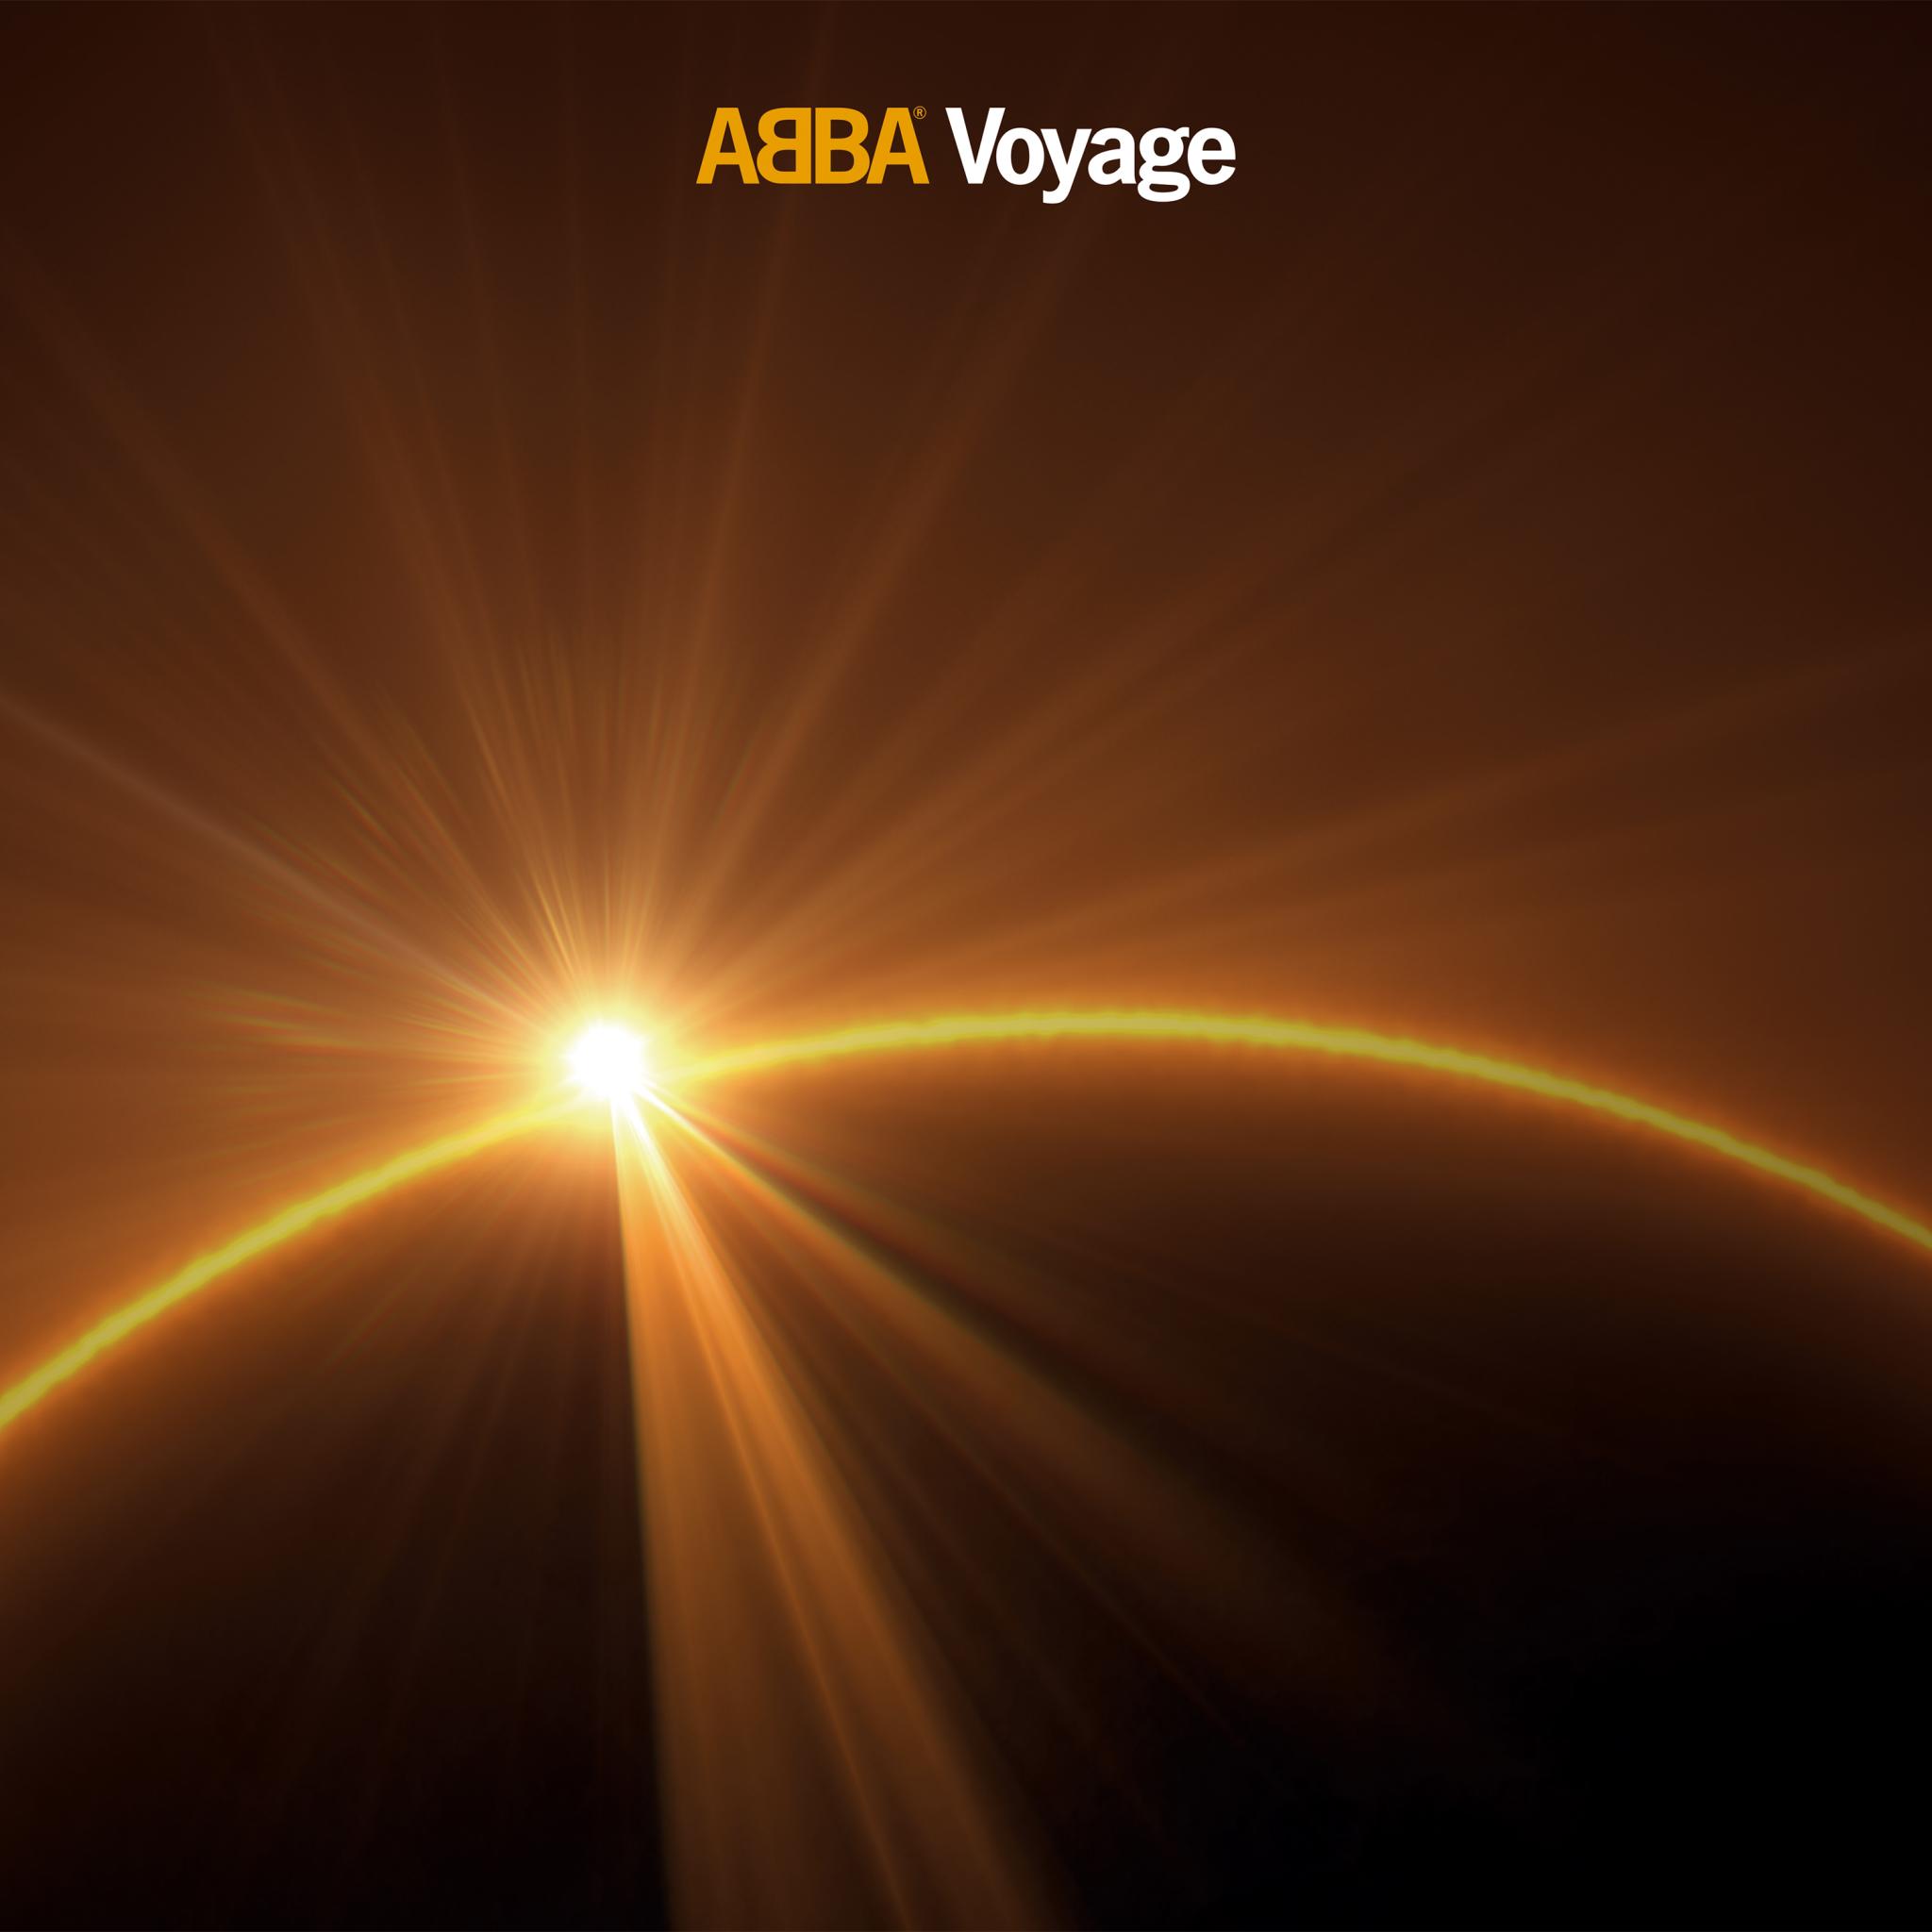 abba voyage vinyl